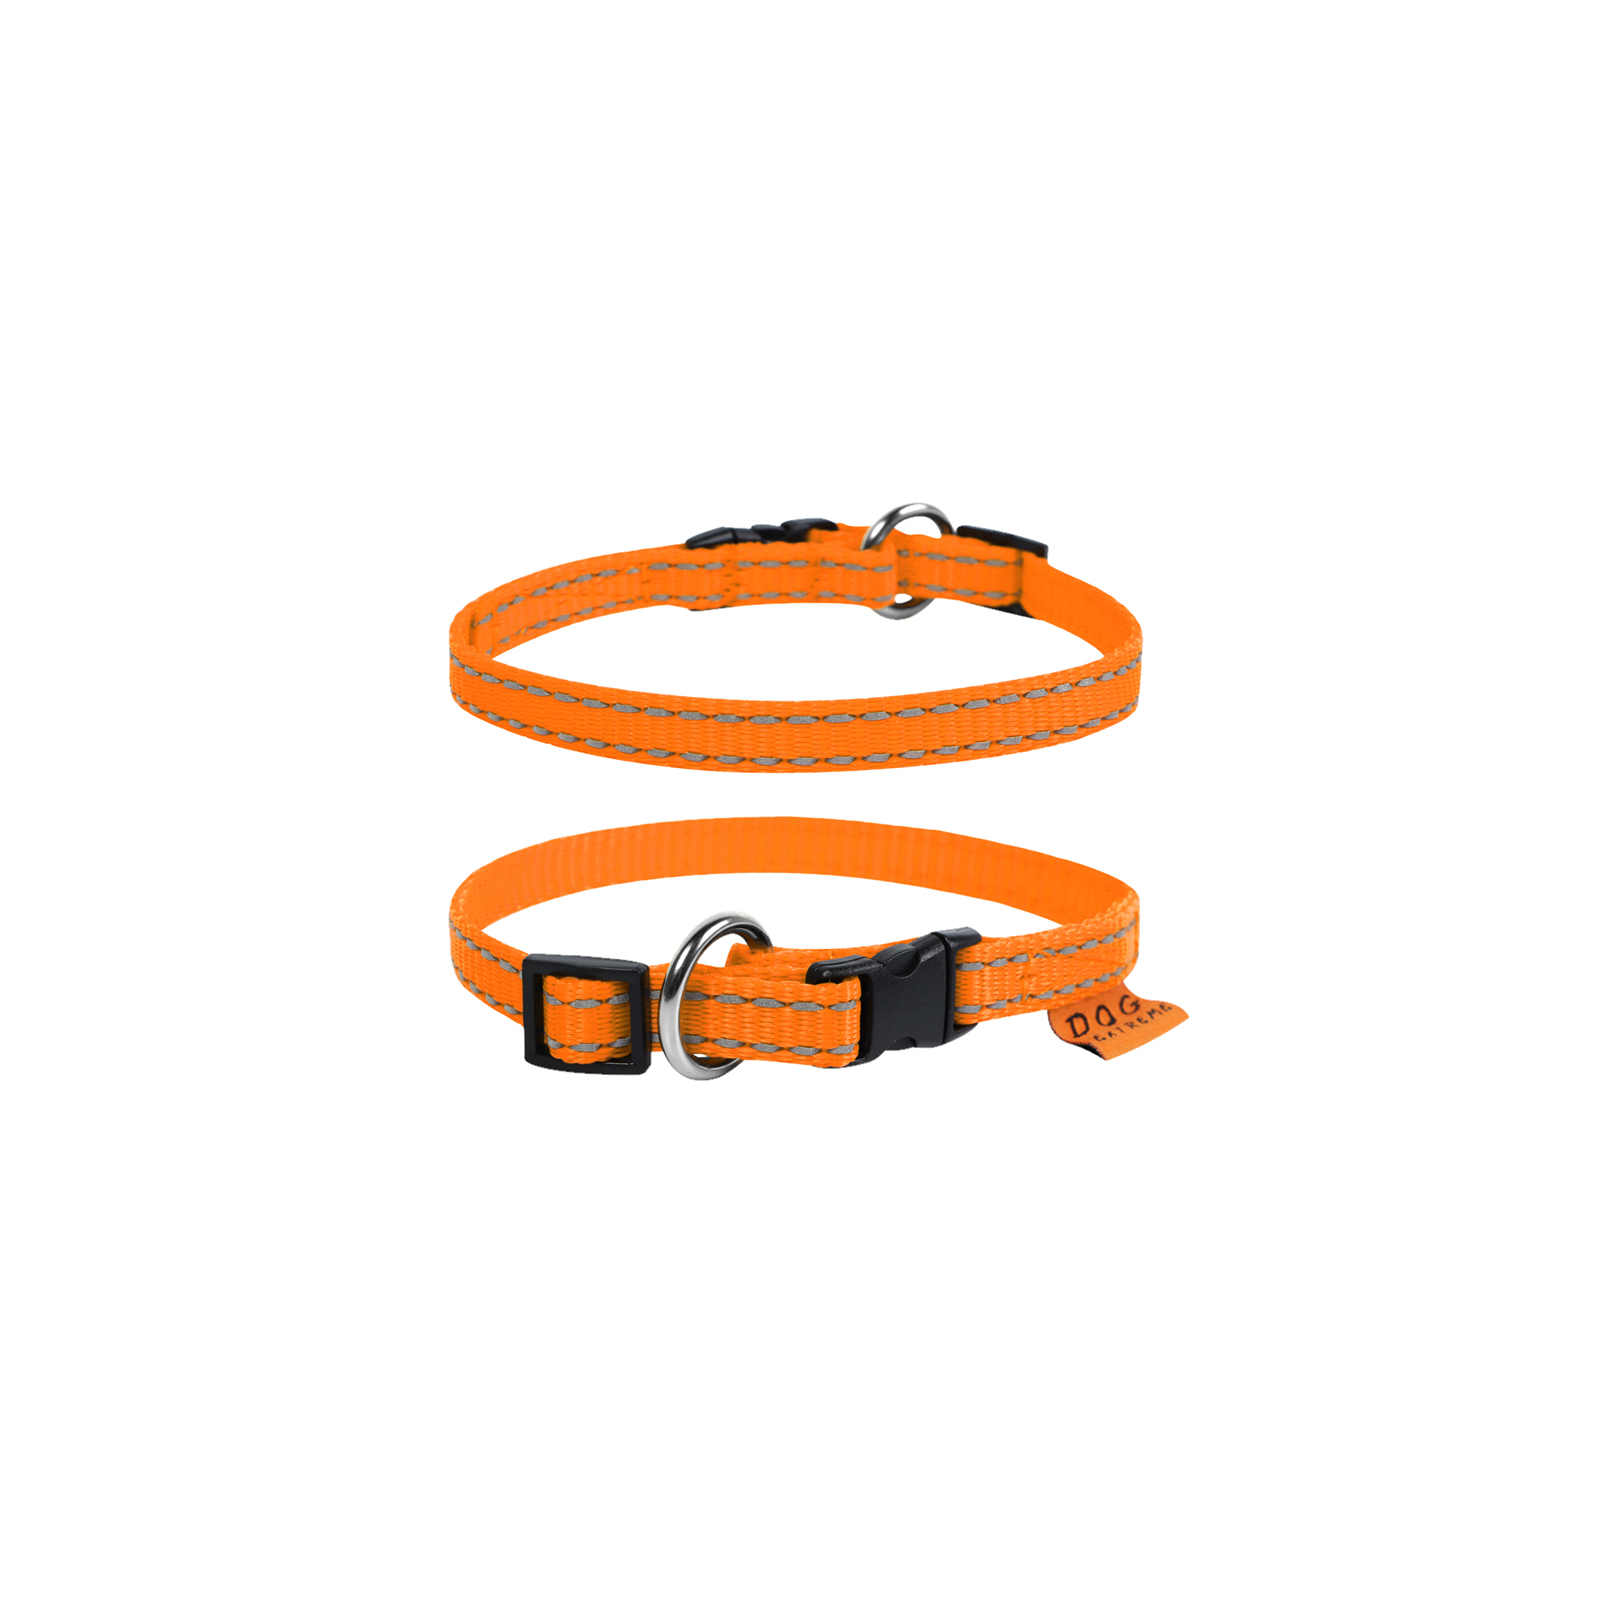 Ошейник для животных Dog Extreme из нейлона регулируемый Ш 25 мм Д 31-49 см оранжевый (02524) изображение 2